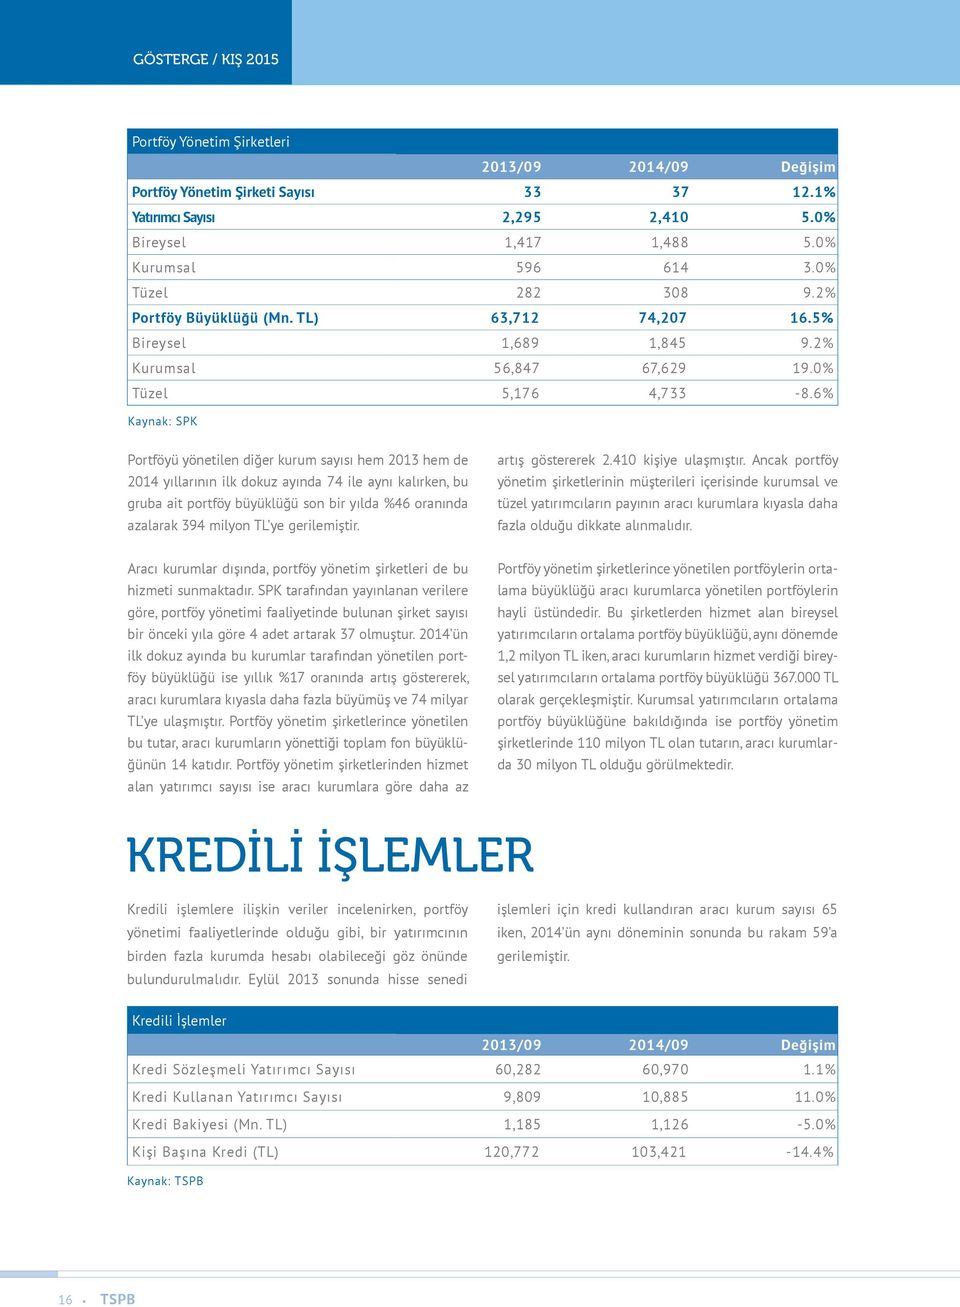 6% Kaynak: SPK Portföyü yönetilen diğer kurum sayısı hem 2013 hem de 2014 yıllarının ilk dokuz ayında 74 ile aynı kalırken, bu gruba ait portföy büyüklüğü son bir yılda %46 oranında azalarak 394